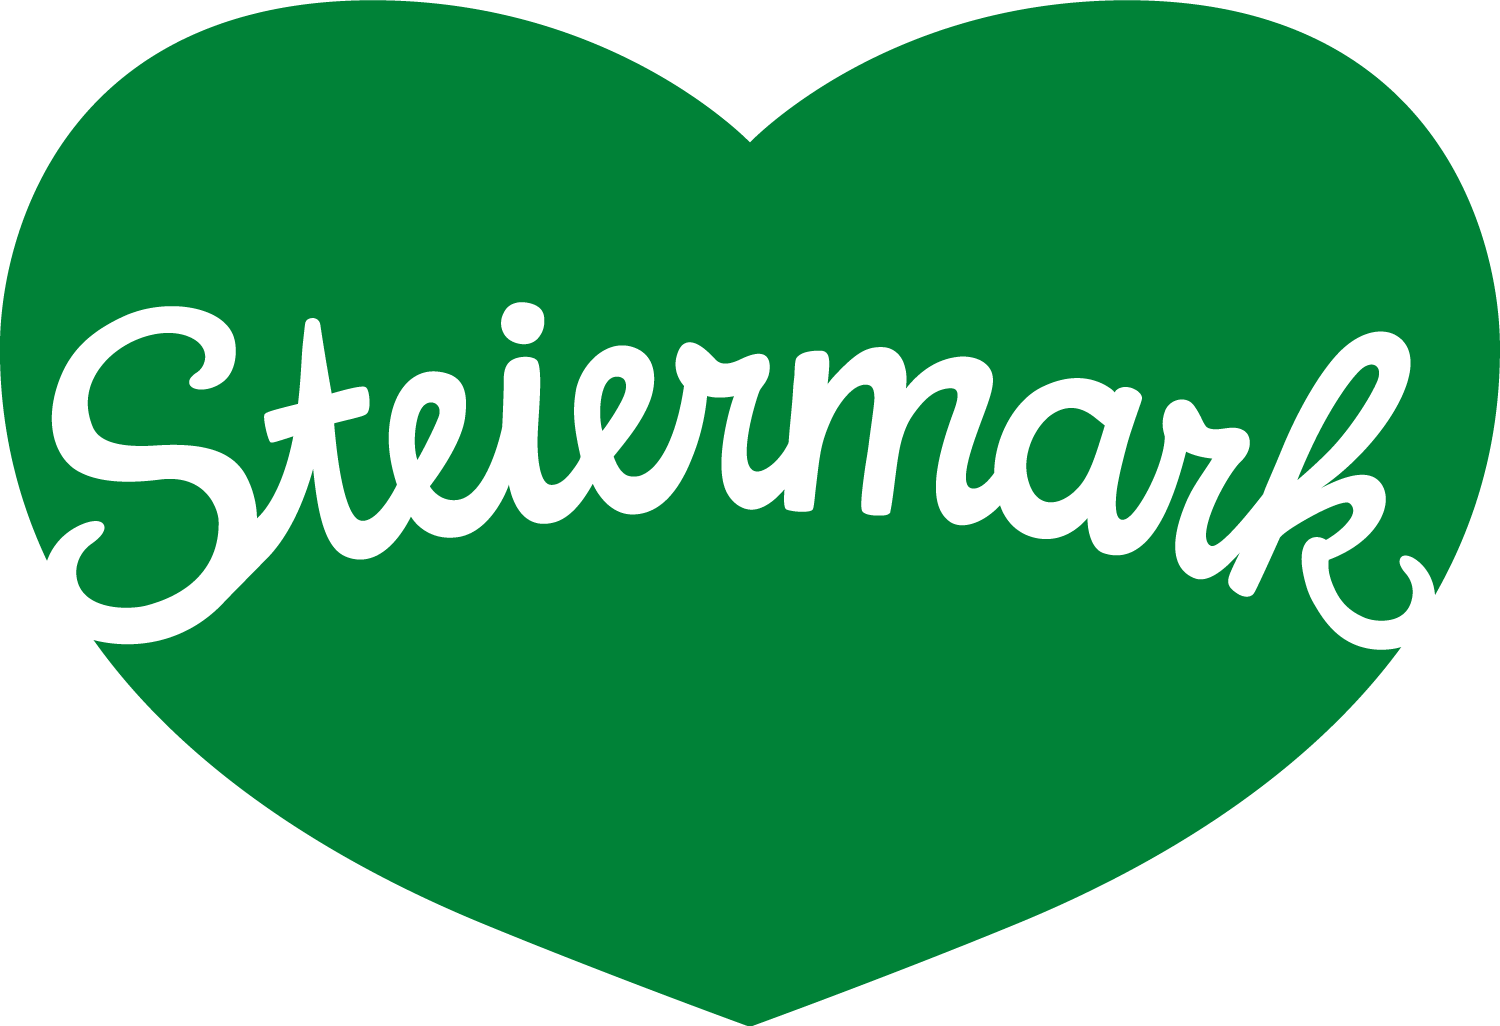 SteiermarkHerz